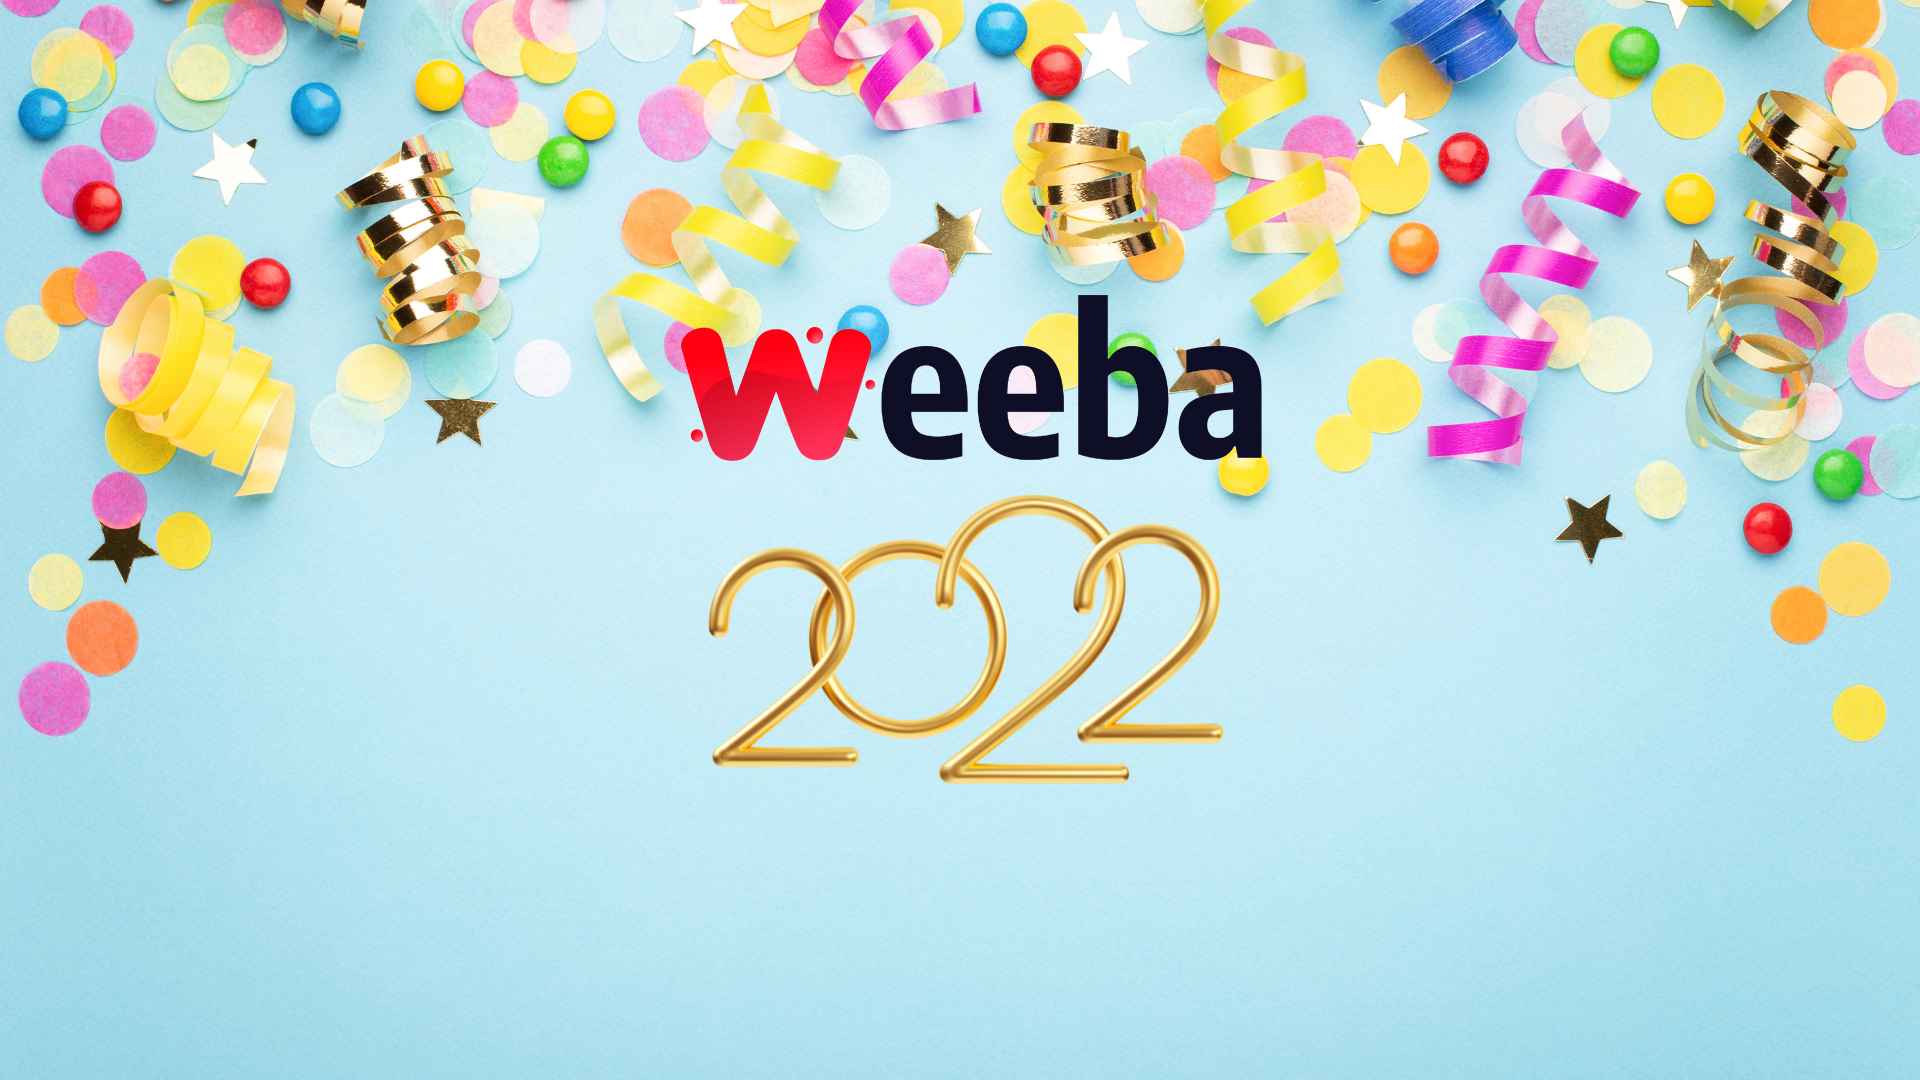 Weeba vous souhaite une excellente année 2022